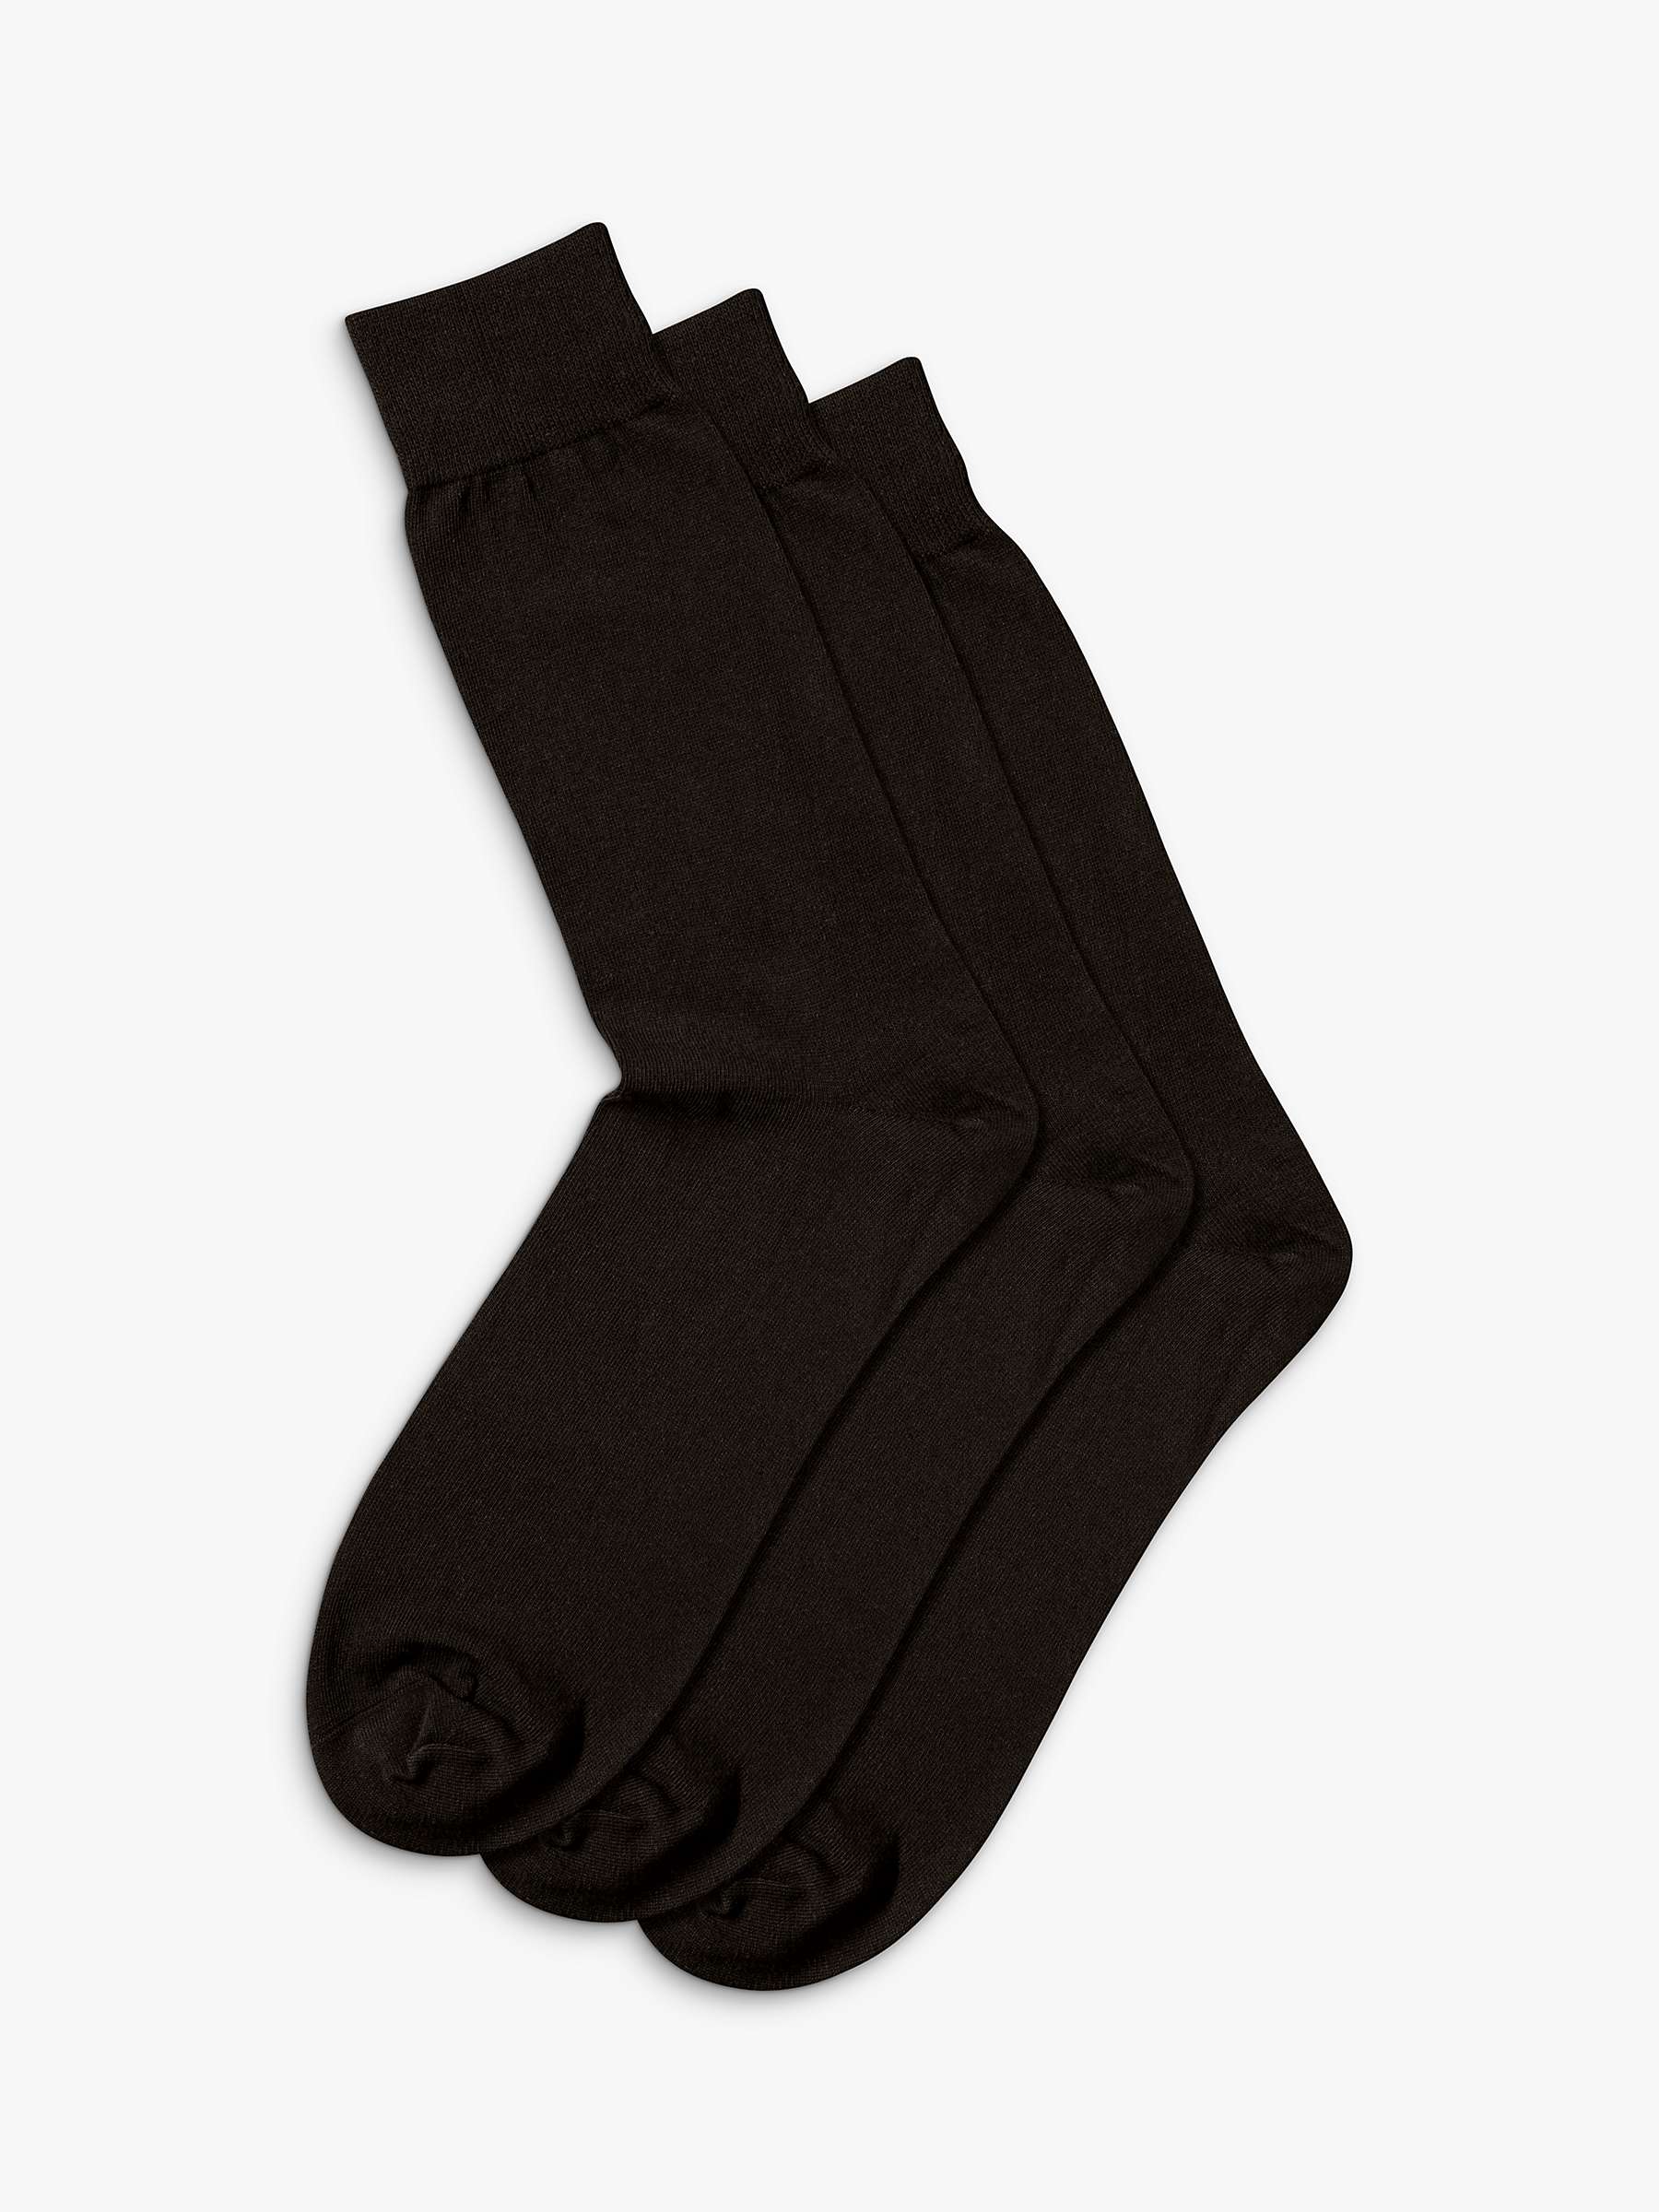 Buy Charles Tyrwhitt Cotton Rich Socks, Pack of 3 Online at johnlewis.com